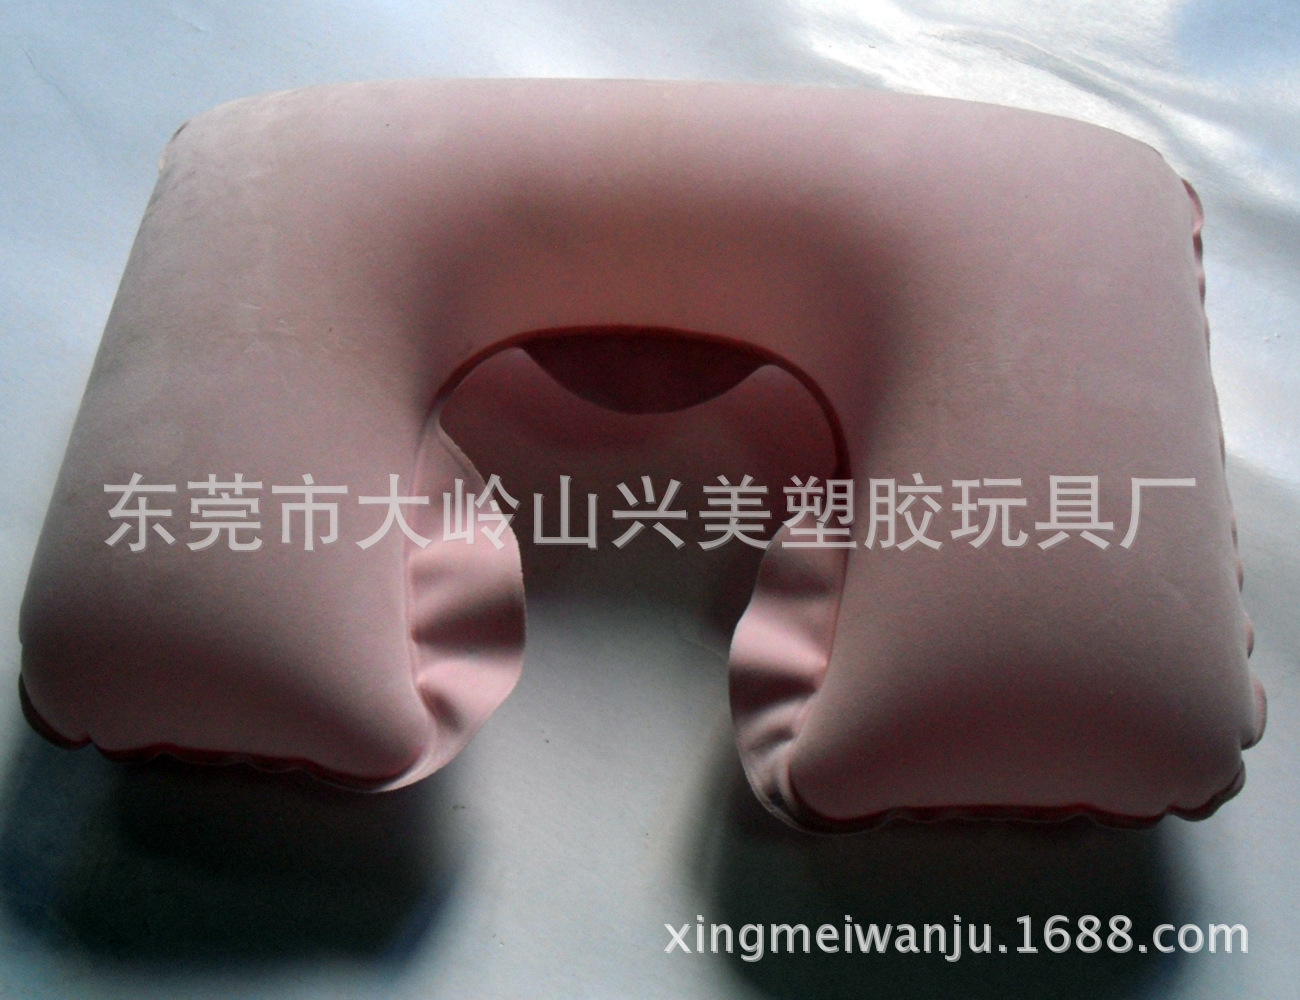 充气U型枕 专业厂家订制环保植绒充气U型枕 环保植绒充气U型枕3